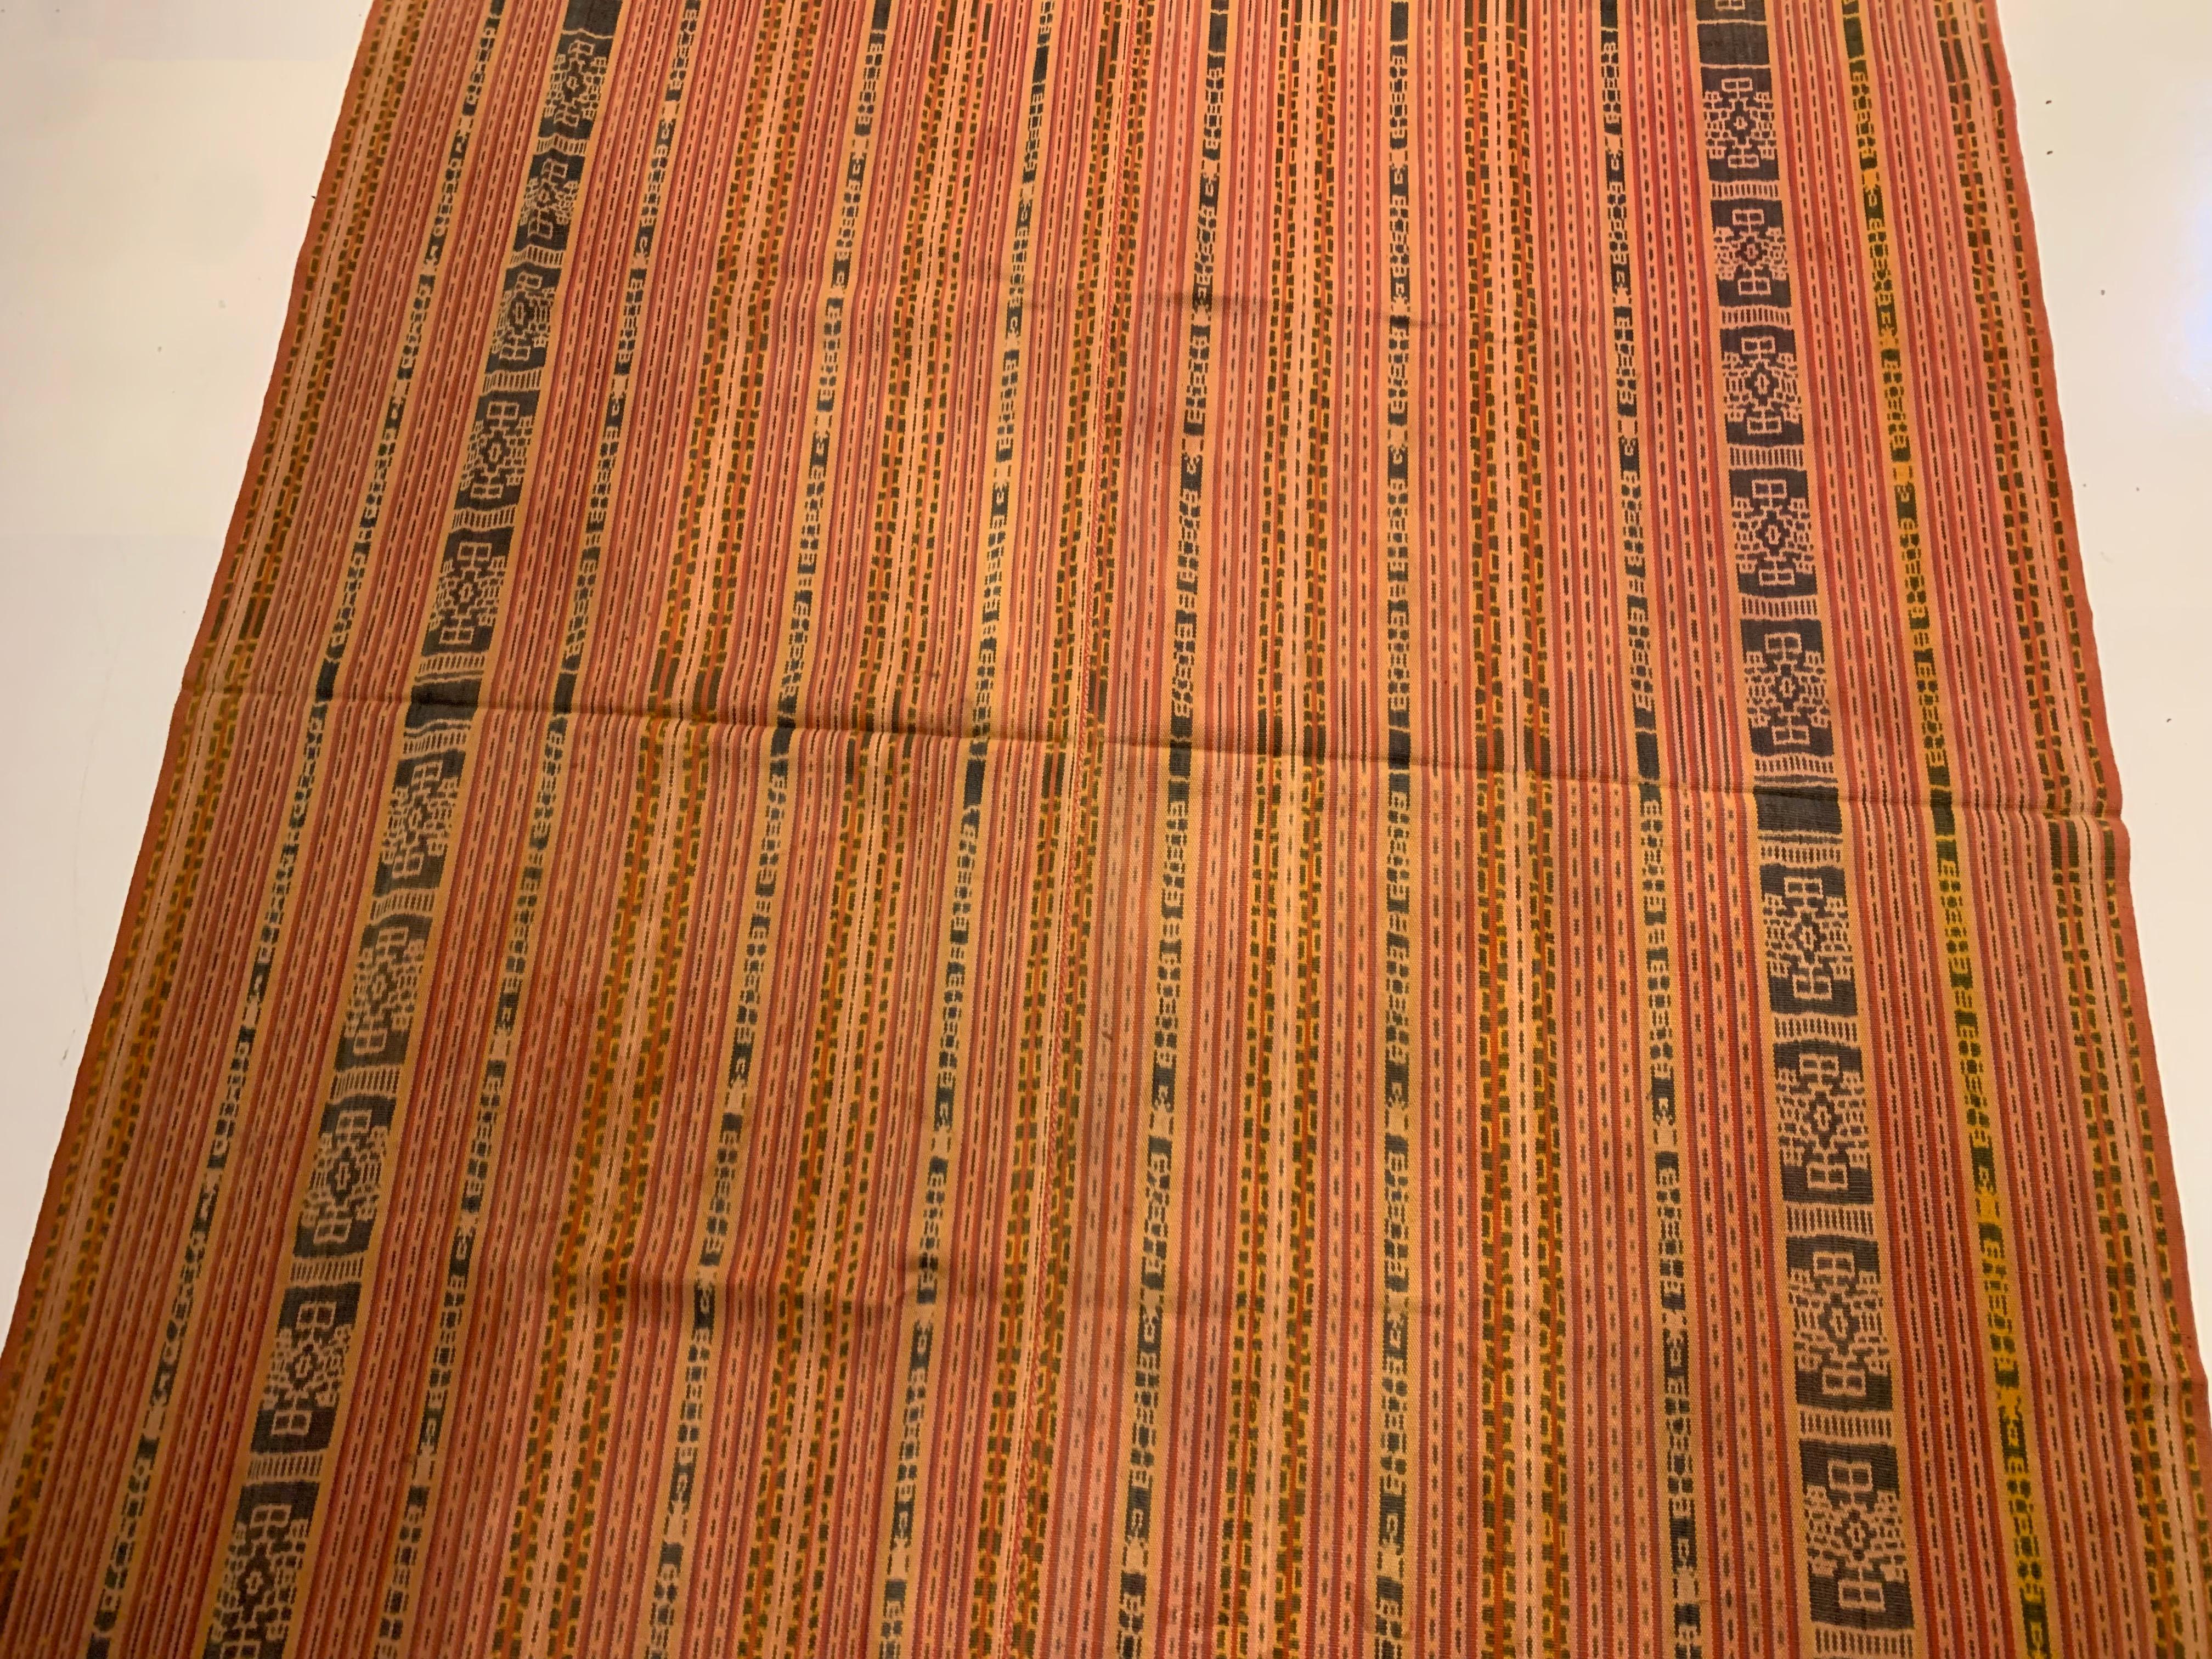 Ein außergewöhnlich altes und schönes Beispiel eines Ikat-Textils aus Westtimor. Dieses besondere Textil ist unglaublich alt, leicht über ein Jahrhundert alt mit einem wunderbaren Verblassen der Farbe und Alterung, die alle zu seinem Charme